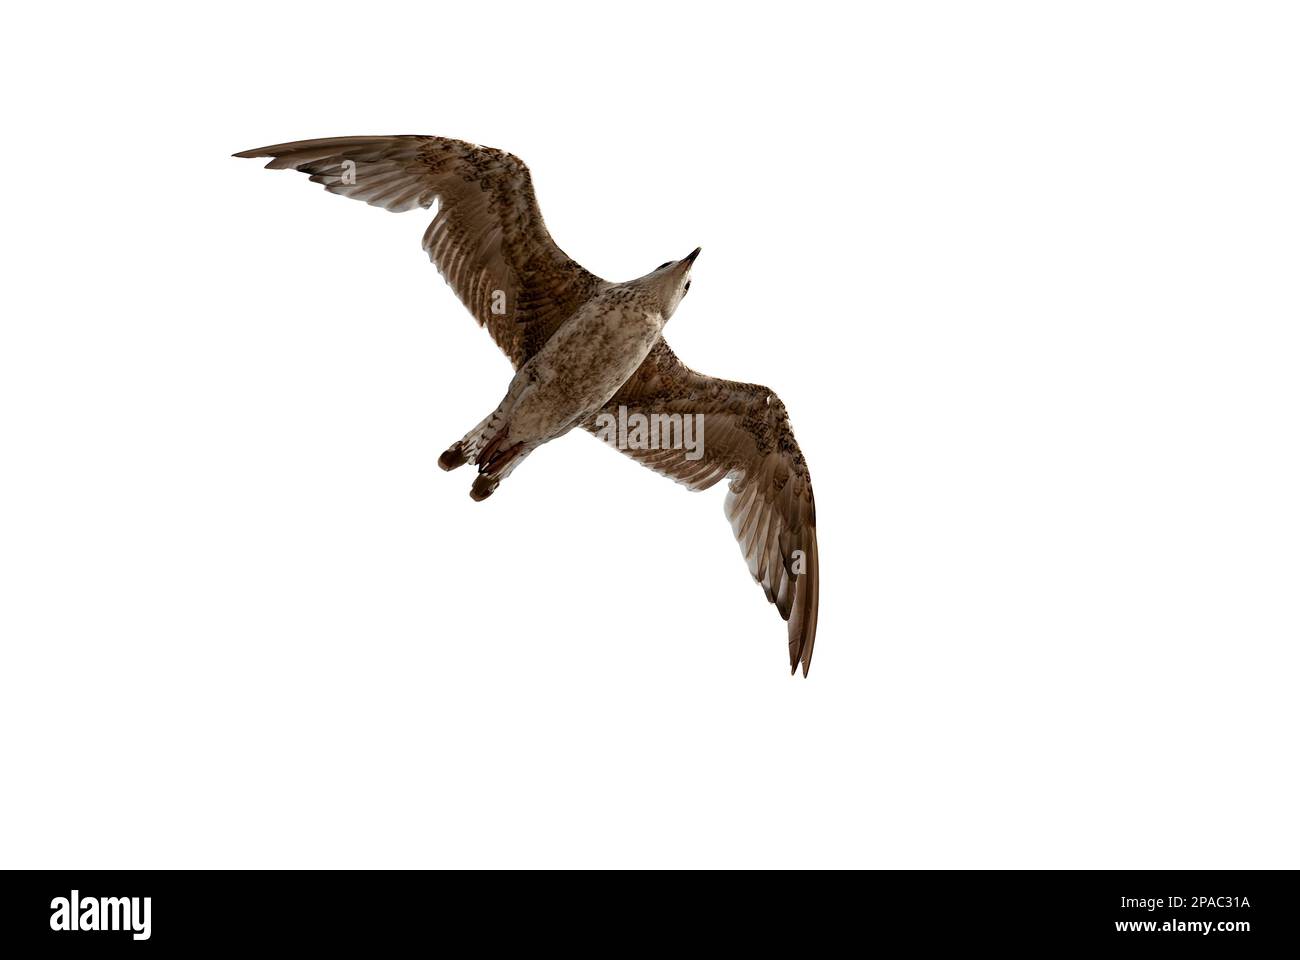 gabbiano in volo primo piano dal basso - gabbiano con ali sparse isolate su sfondo bianco Foto Stock